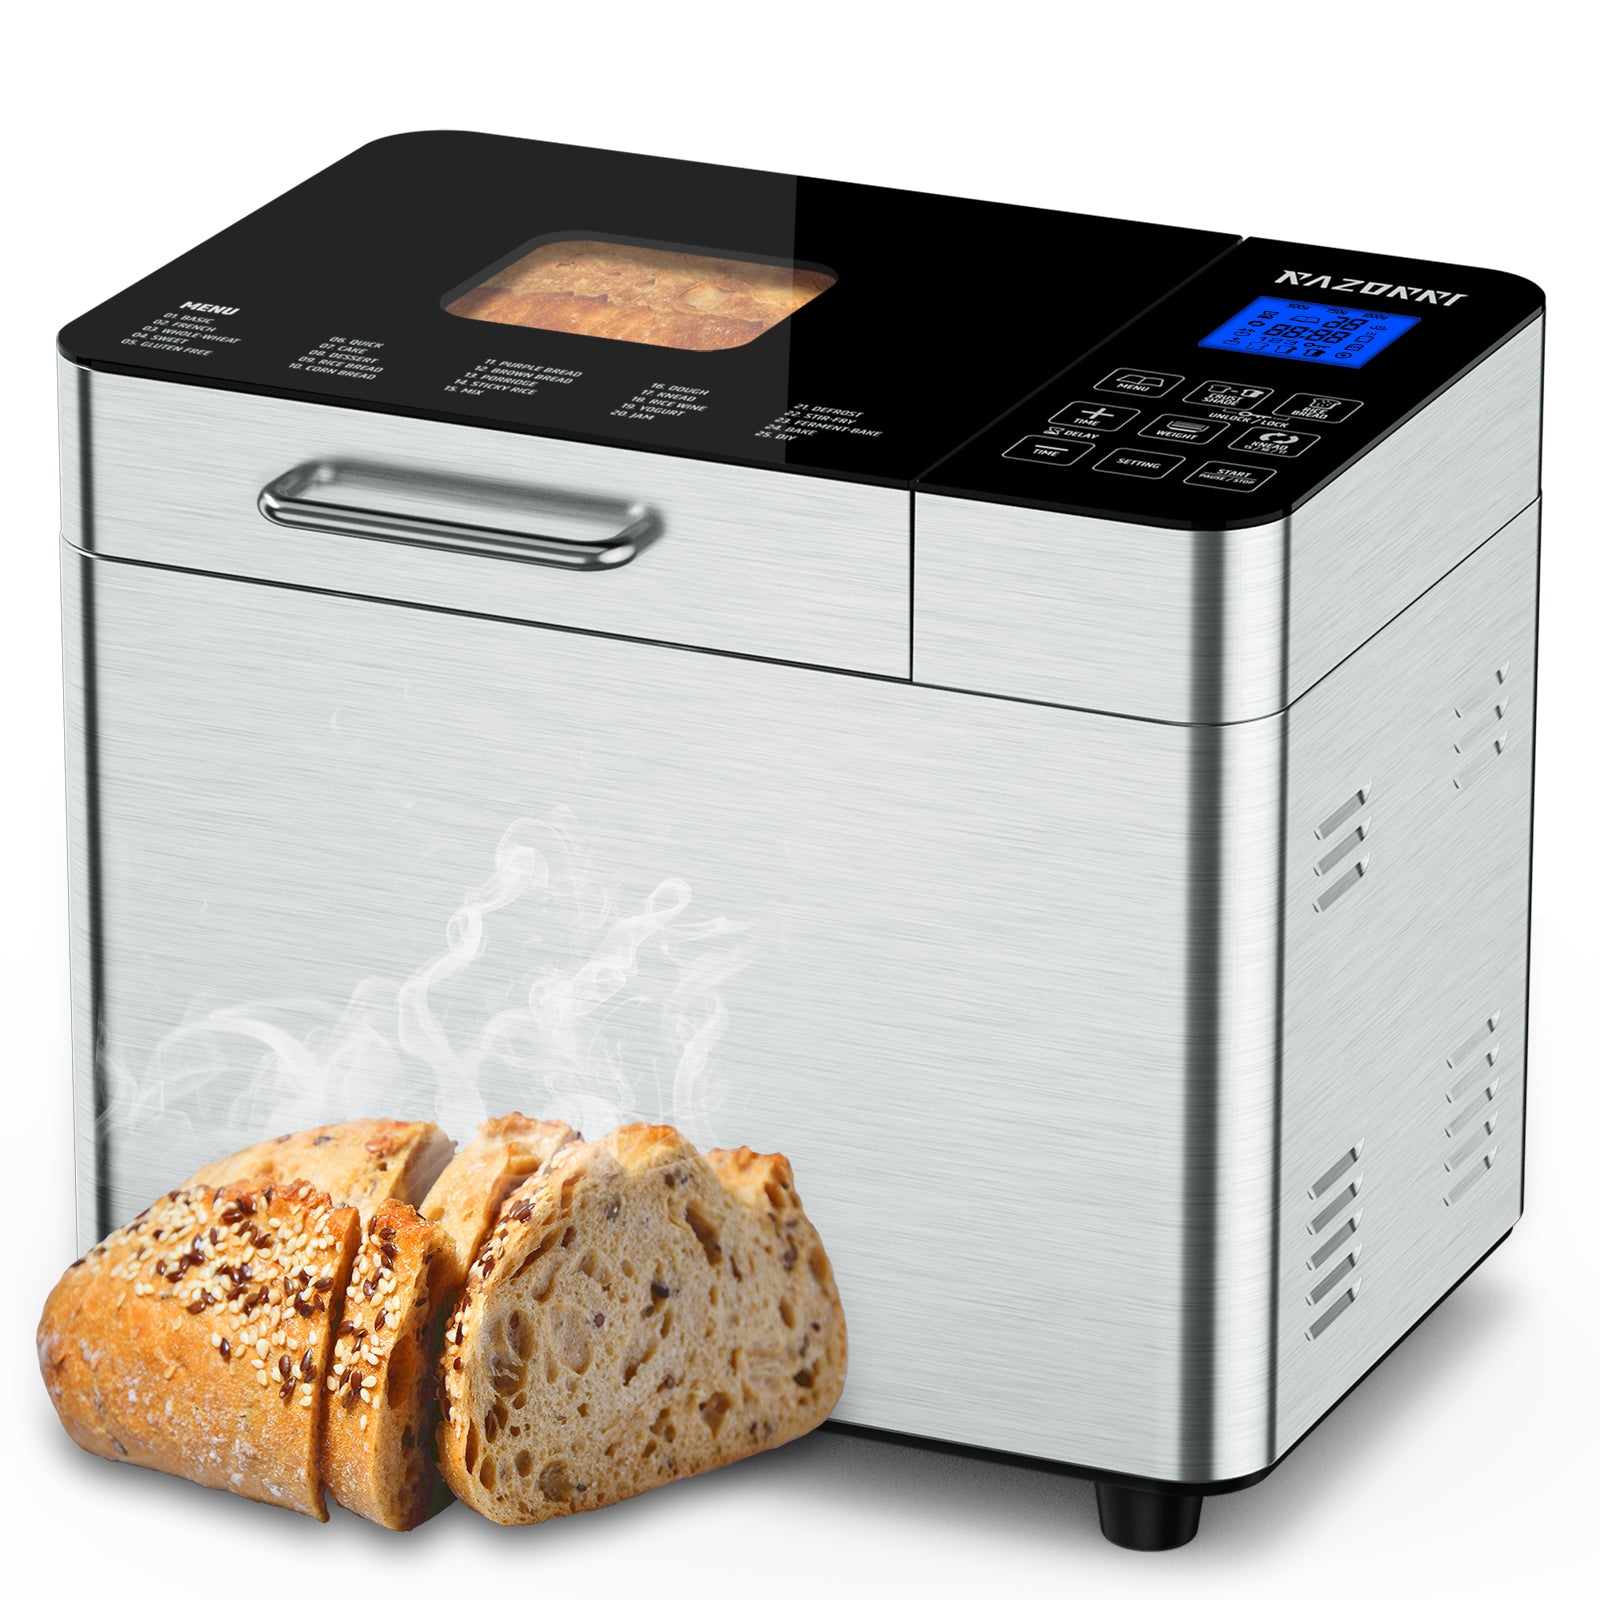 Fresco Countertop Bread Maker Machine BM01A – Razorri